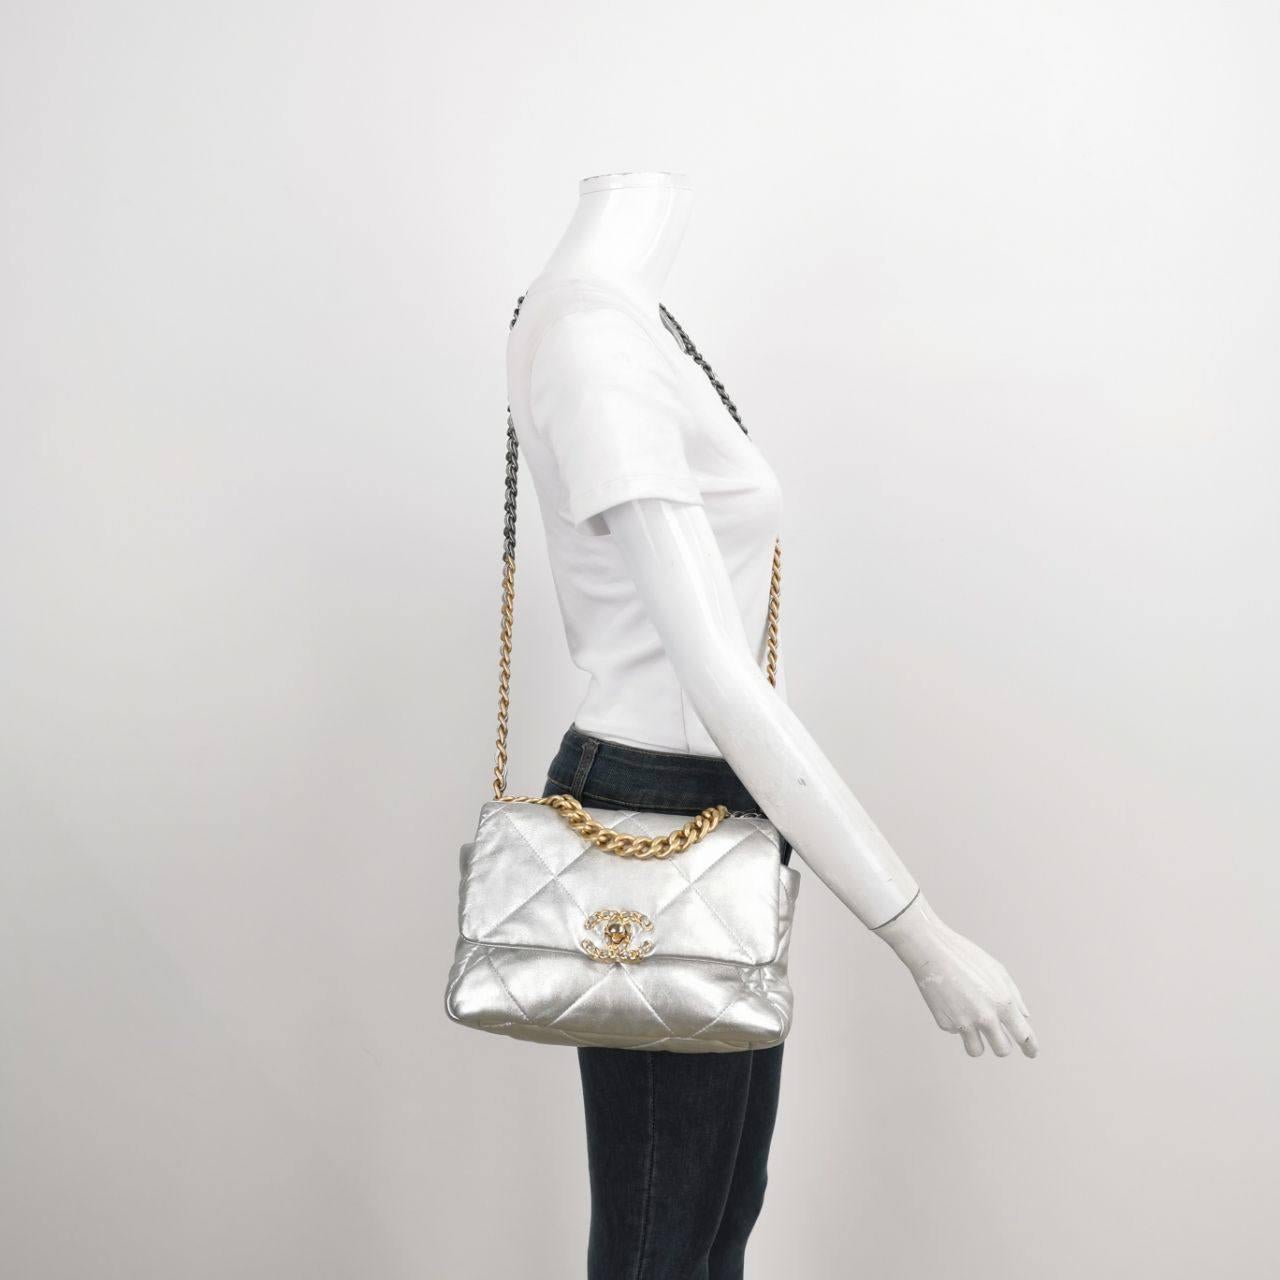 Le sac Chanel 19 a été le dernier sac conçu par Karl Lagerfeld. Avec ce sac, vous vous appropriez un morceau d'histoire. Le cuir et la forme décontractée de ce vêtement lui confèrent une allure nonchalante et un chic sans effort. La quincaillerie